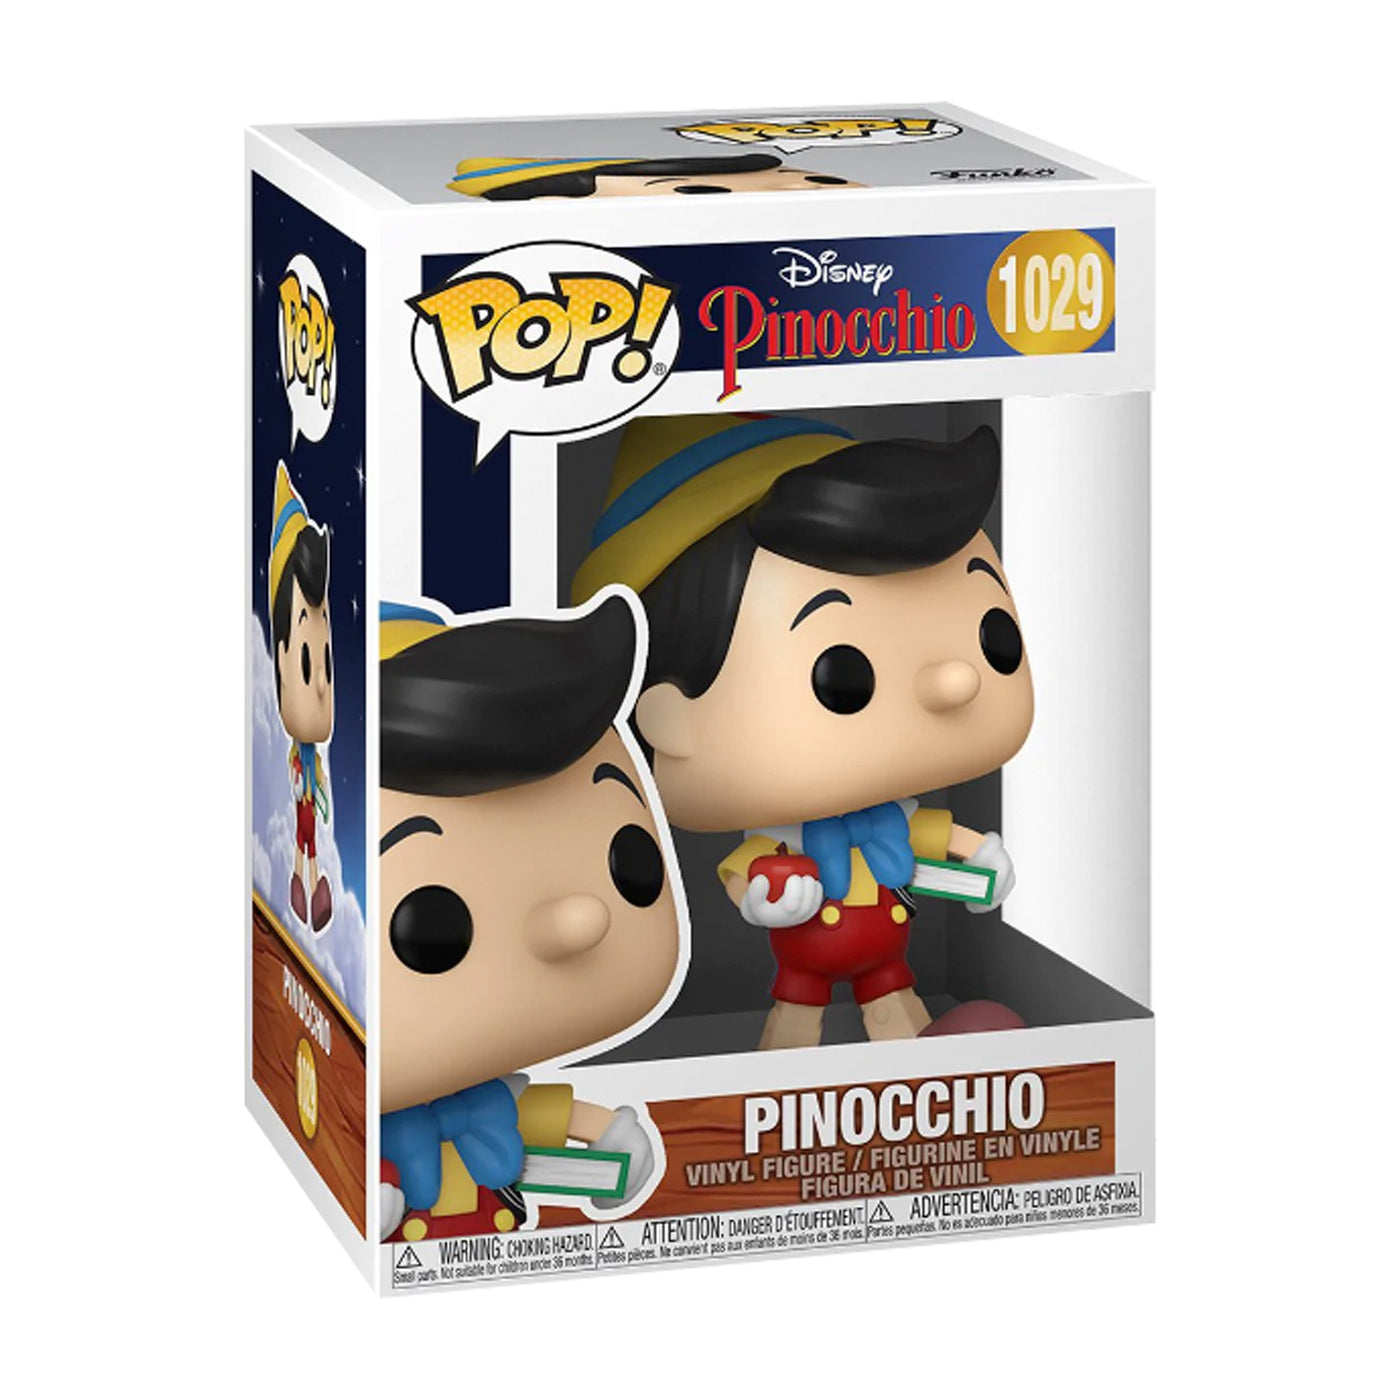 Funko Pop: Pinocho (1029)